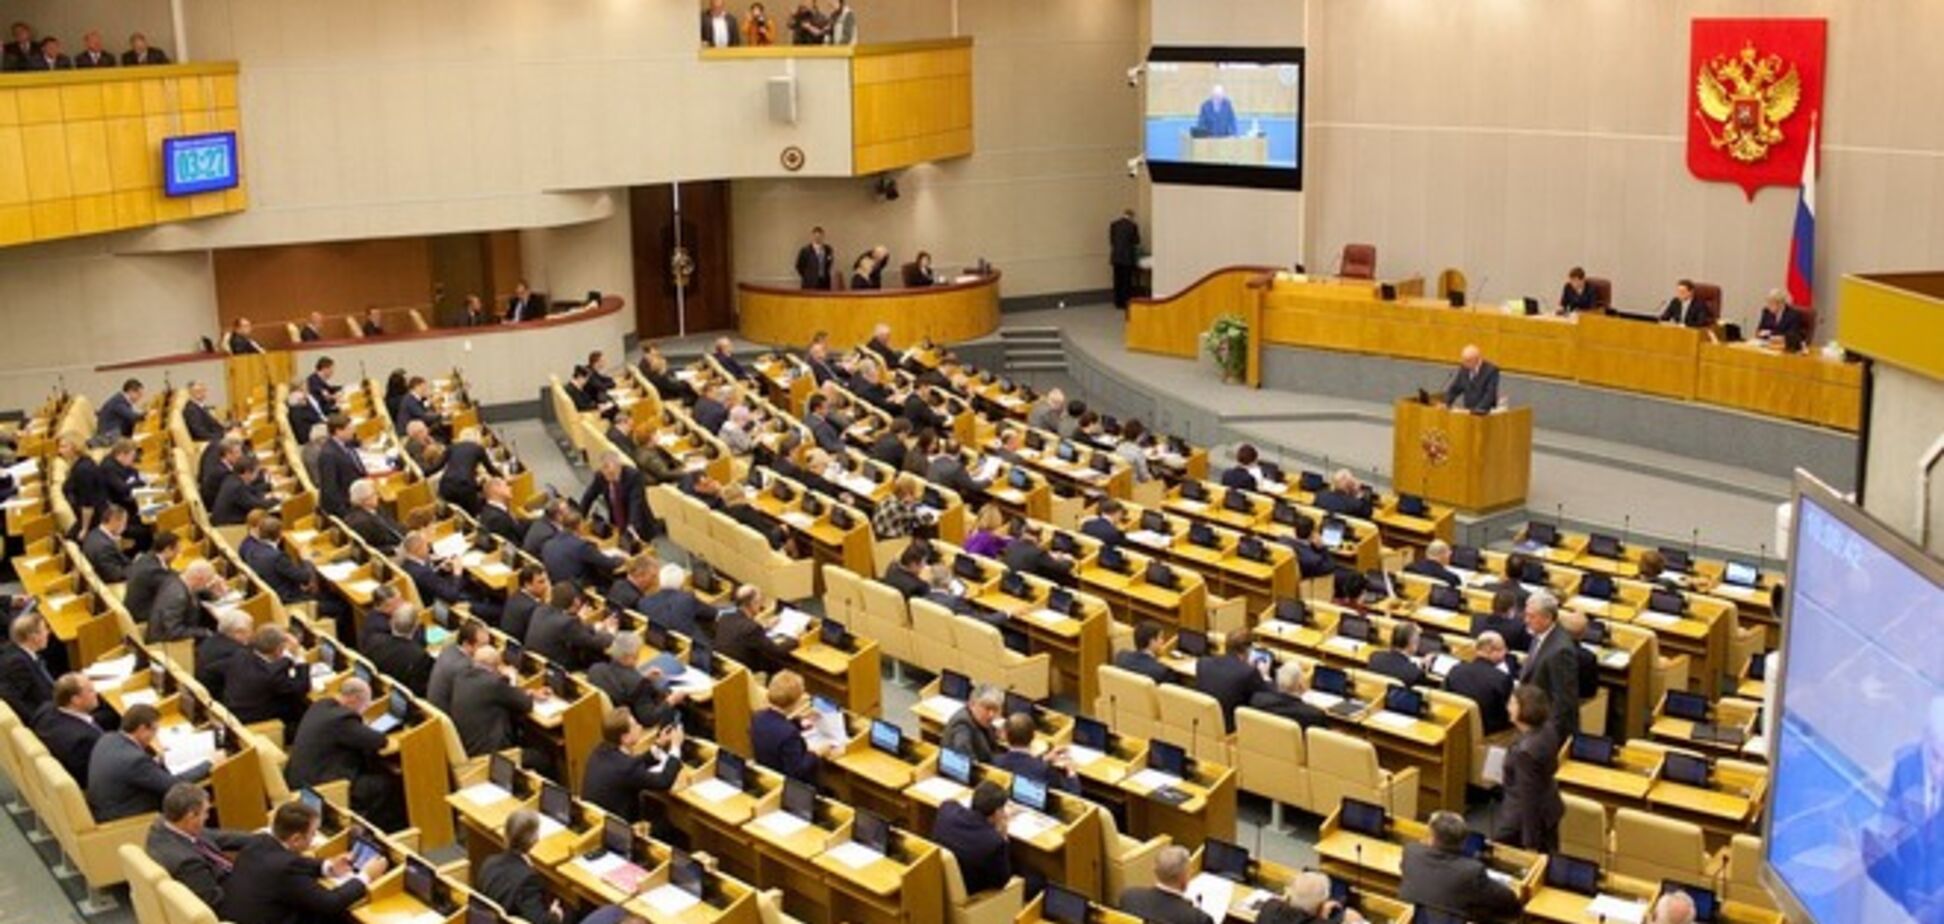 Наемникам на заметку: депутаты Госдумы хотят запретить себе рисковать жизнью без разрешения